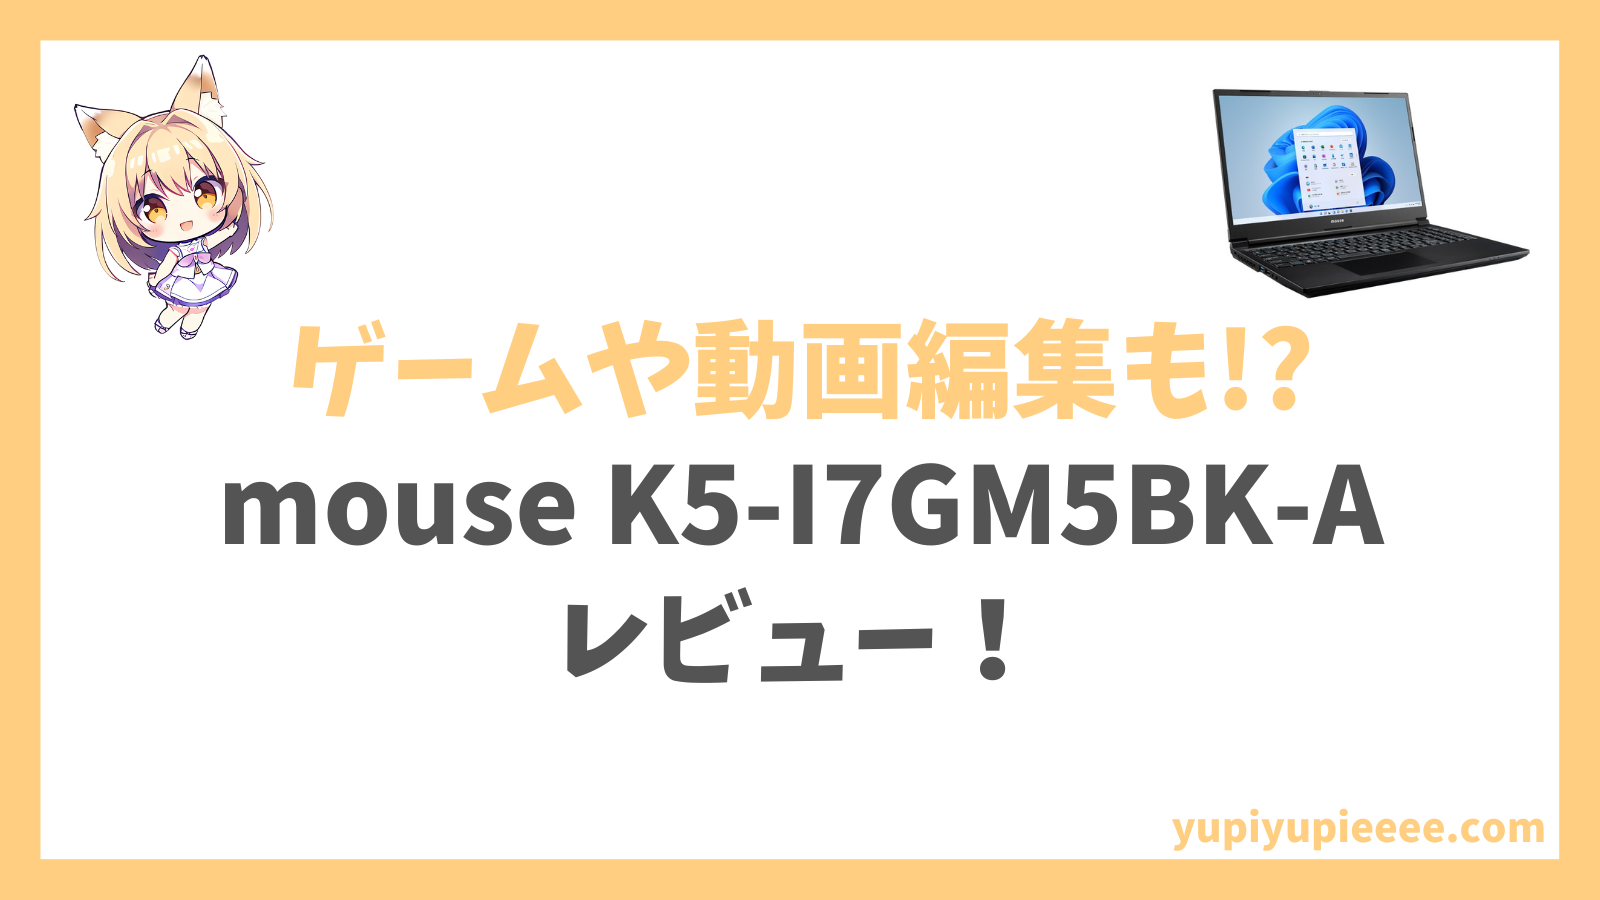 mouse K5-I7GM5BK-Aレビュー